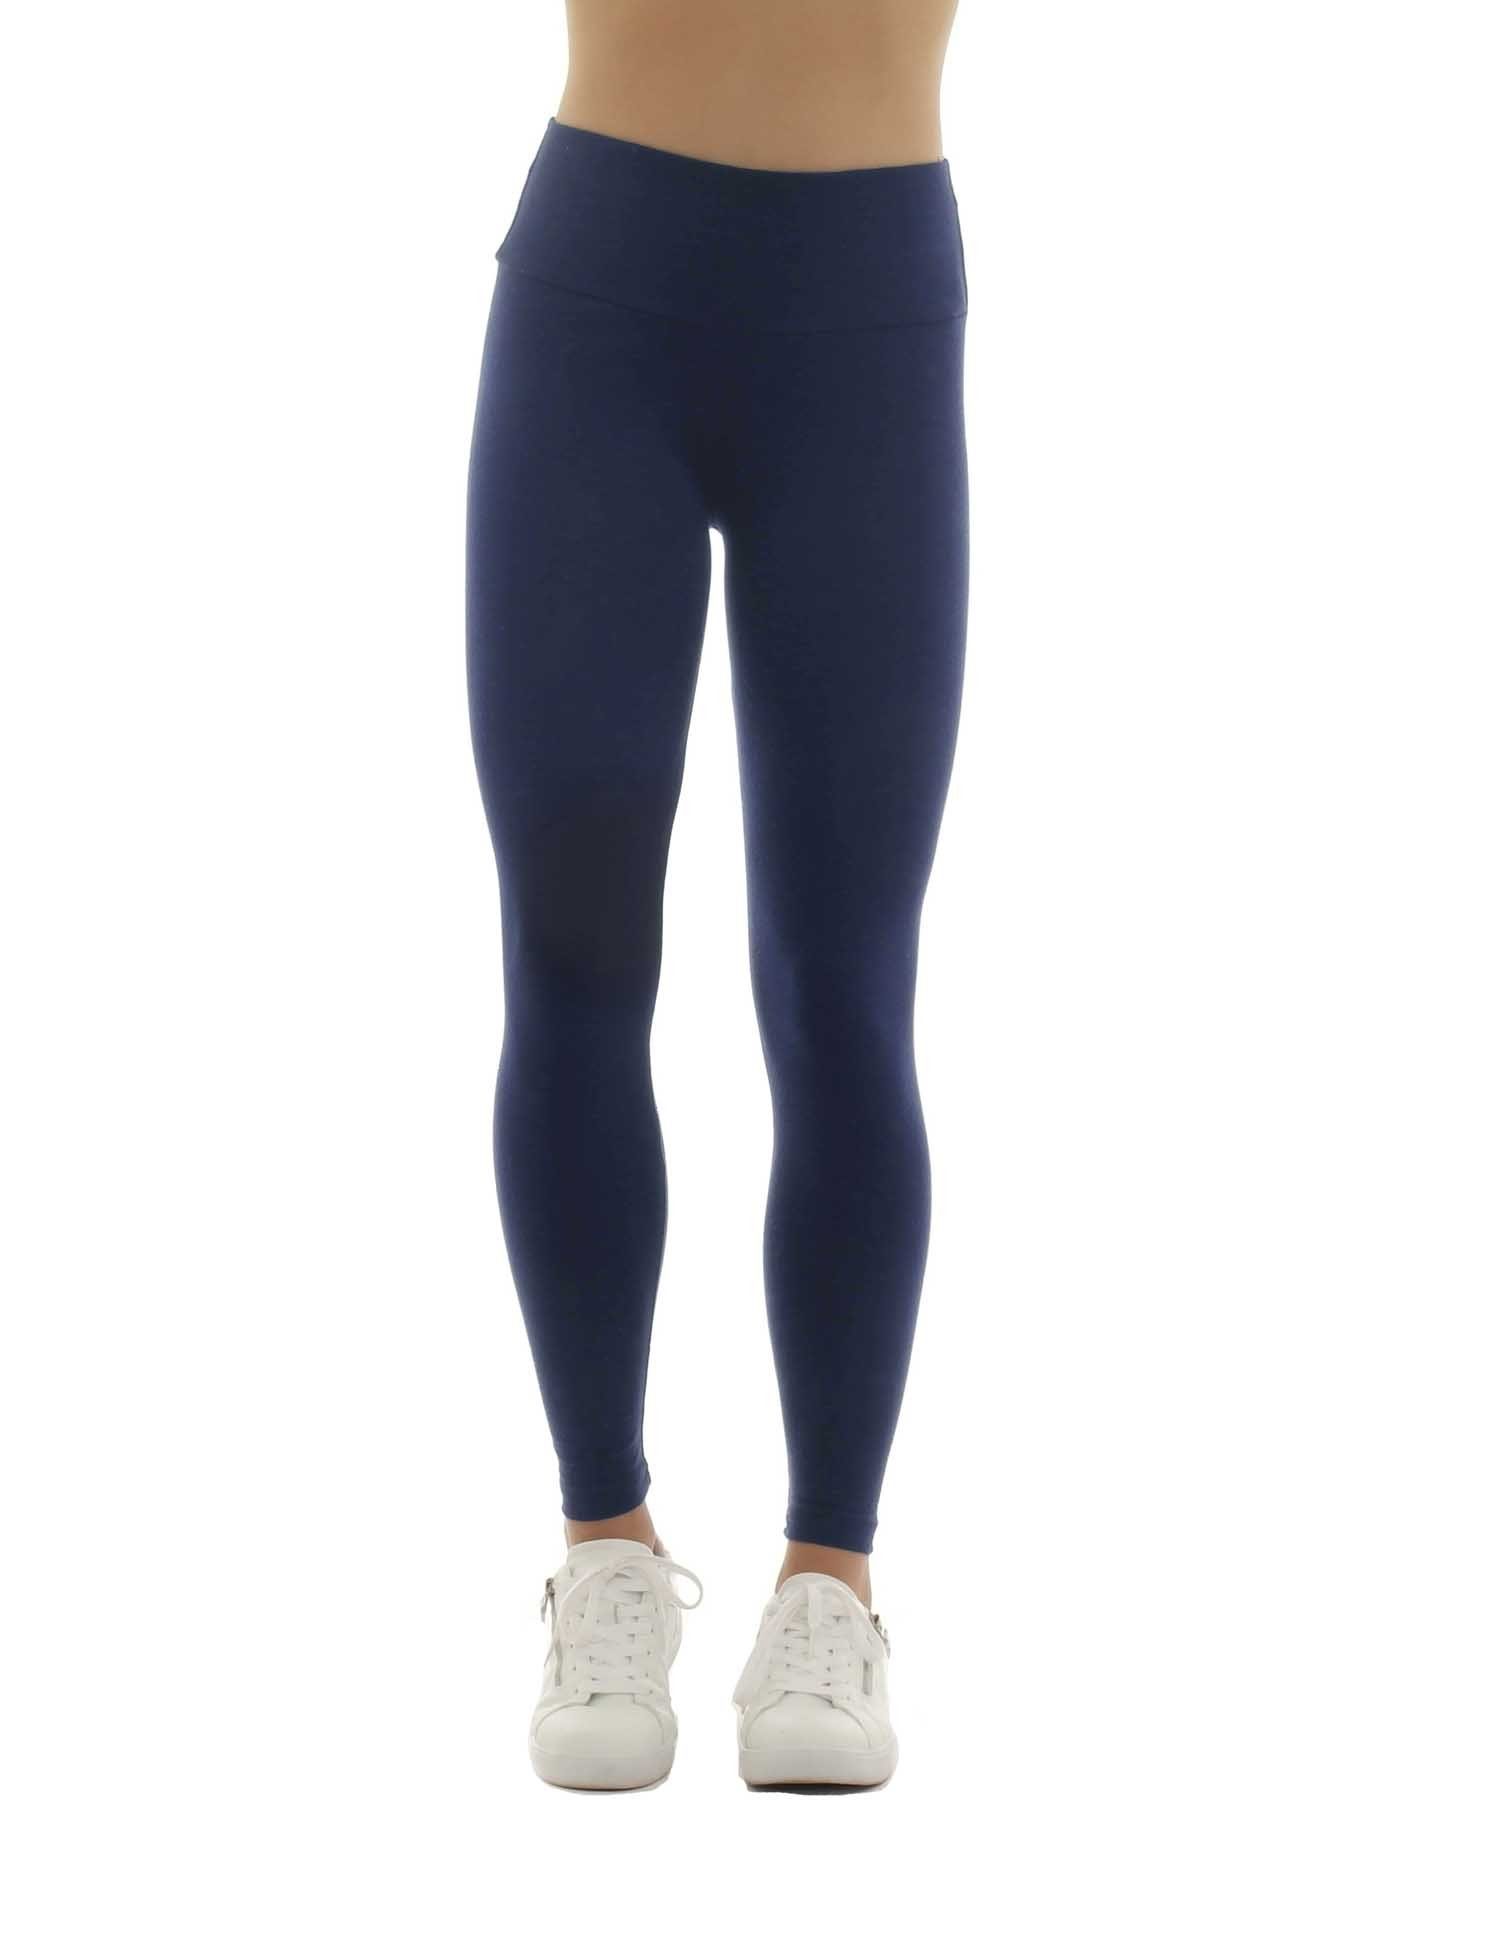 F&K-Mode Leggings Damen Leggings lang hoher Bund Taschen Hose gummi dunkelblau